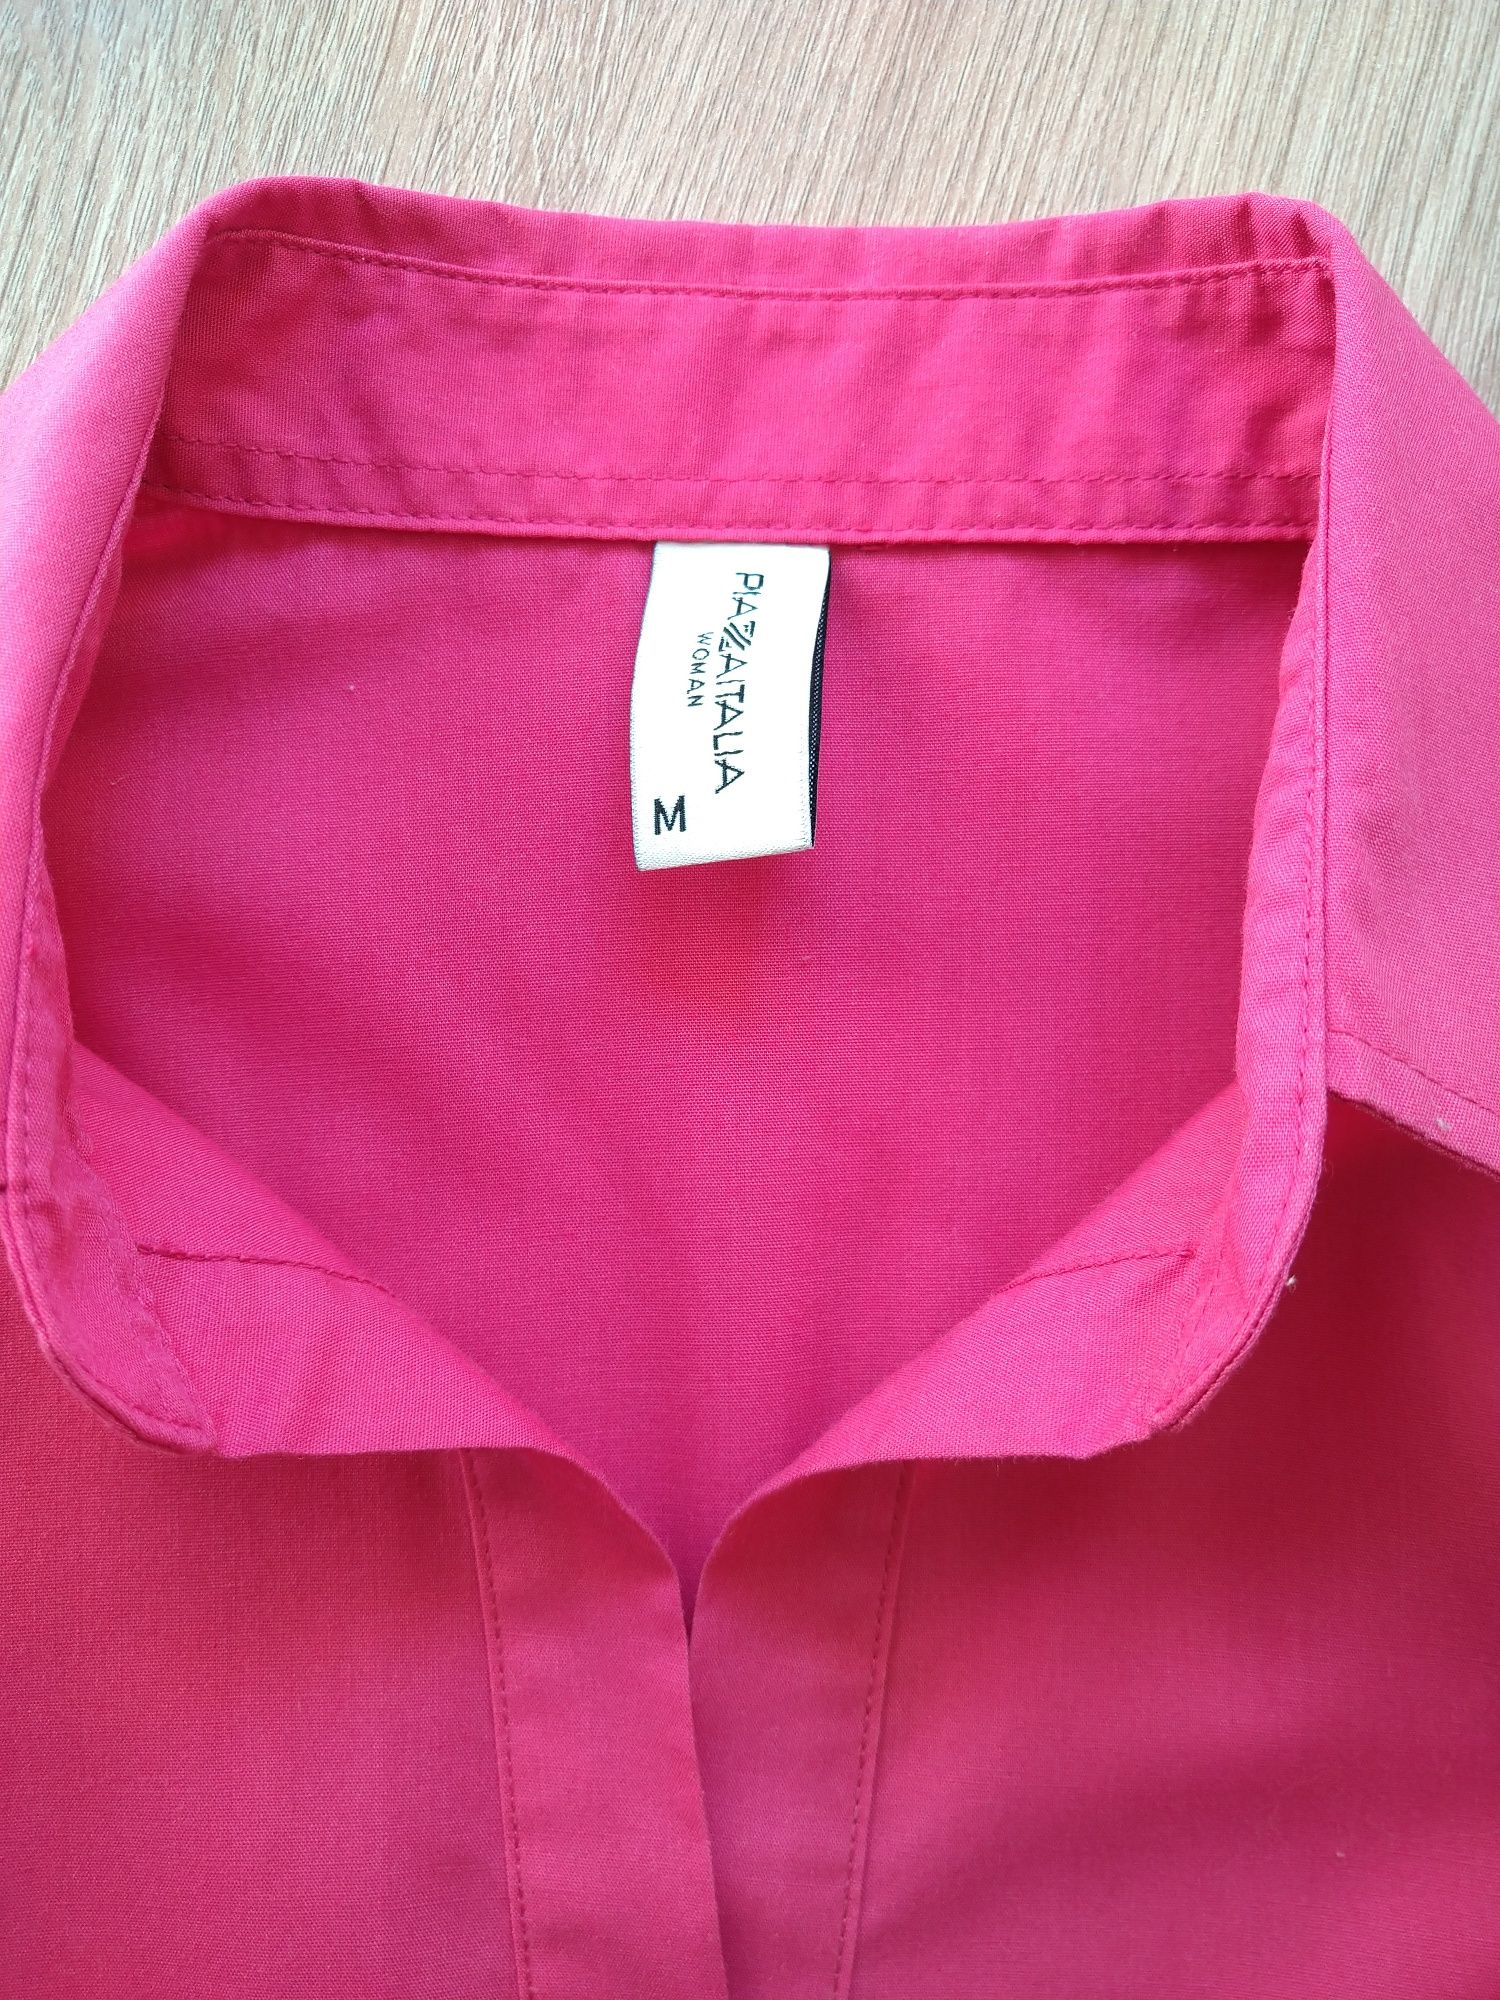 Блузка приталена кольору фуксія